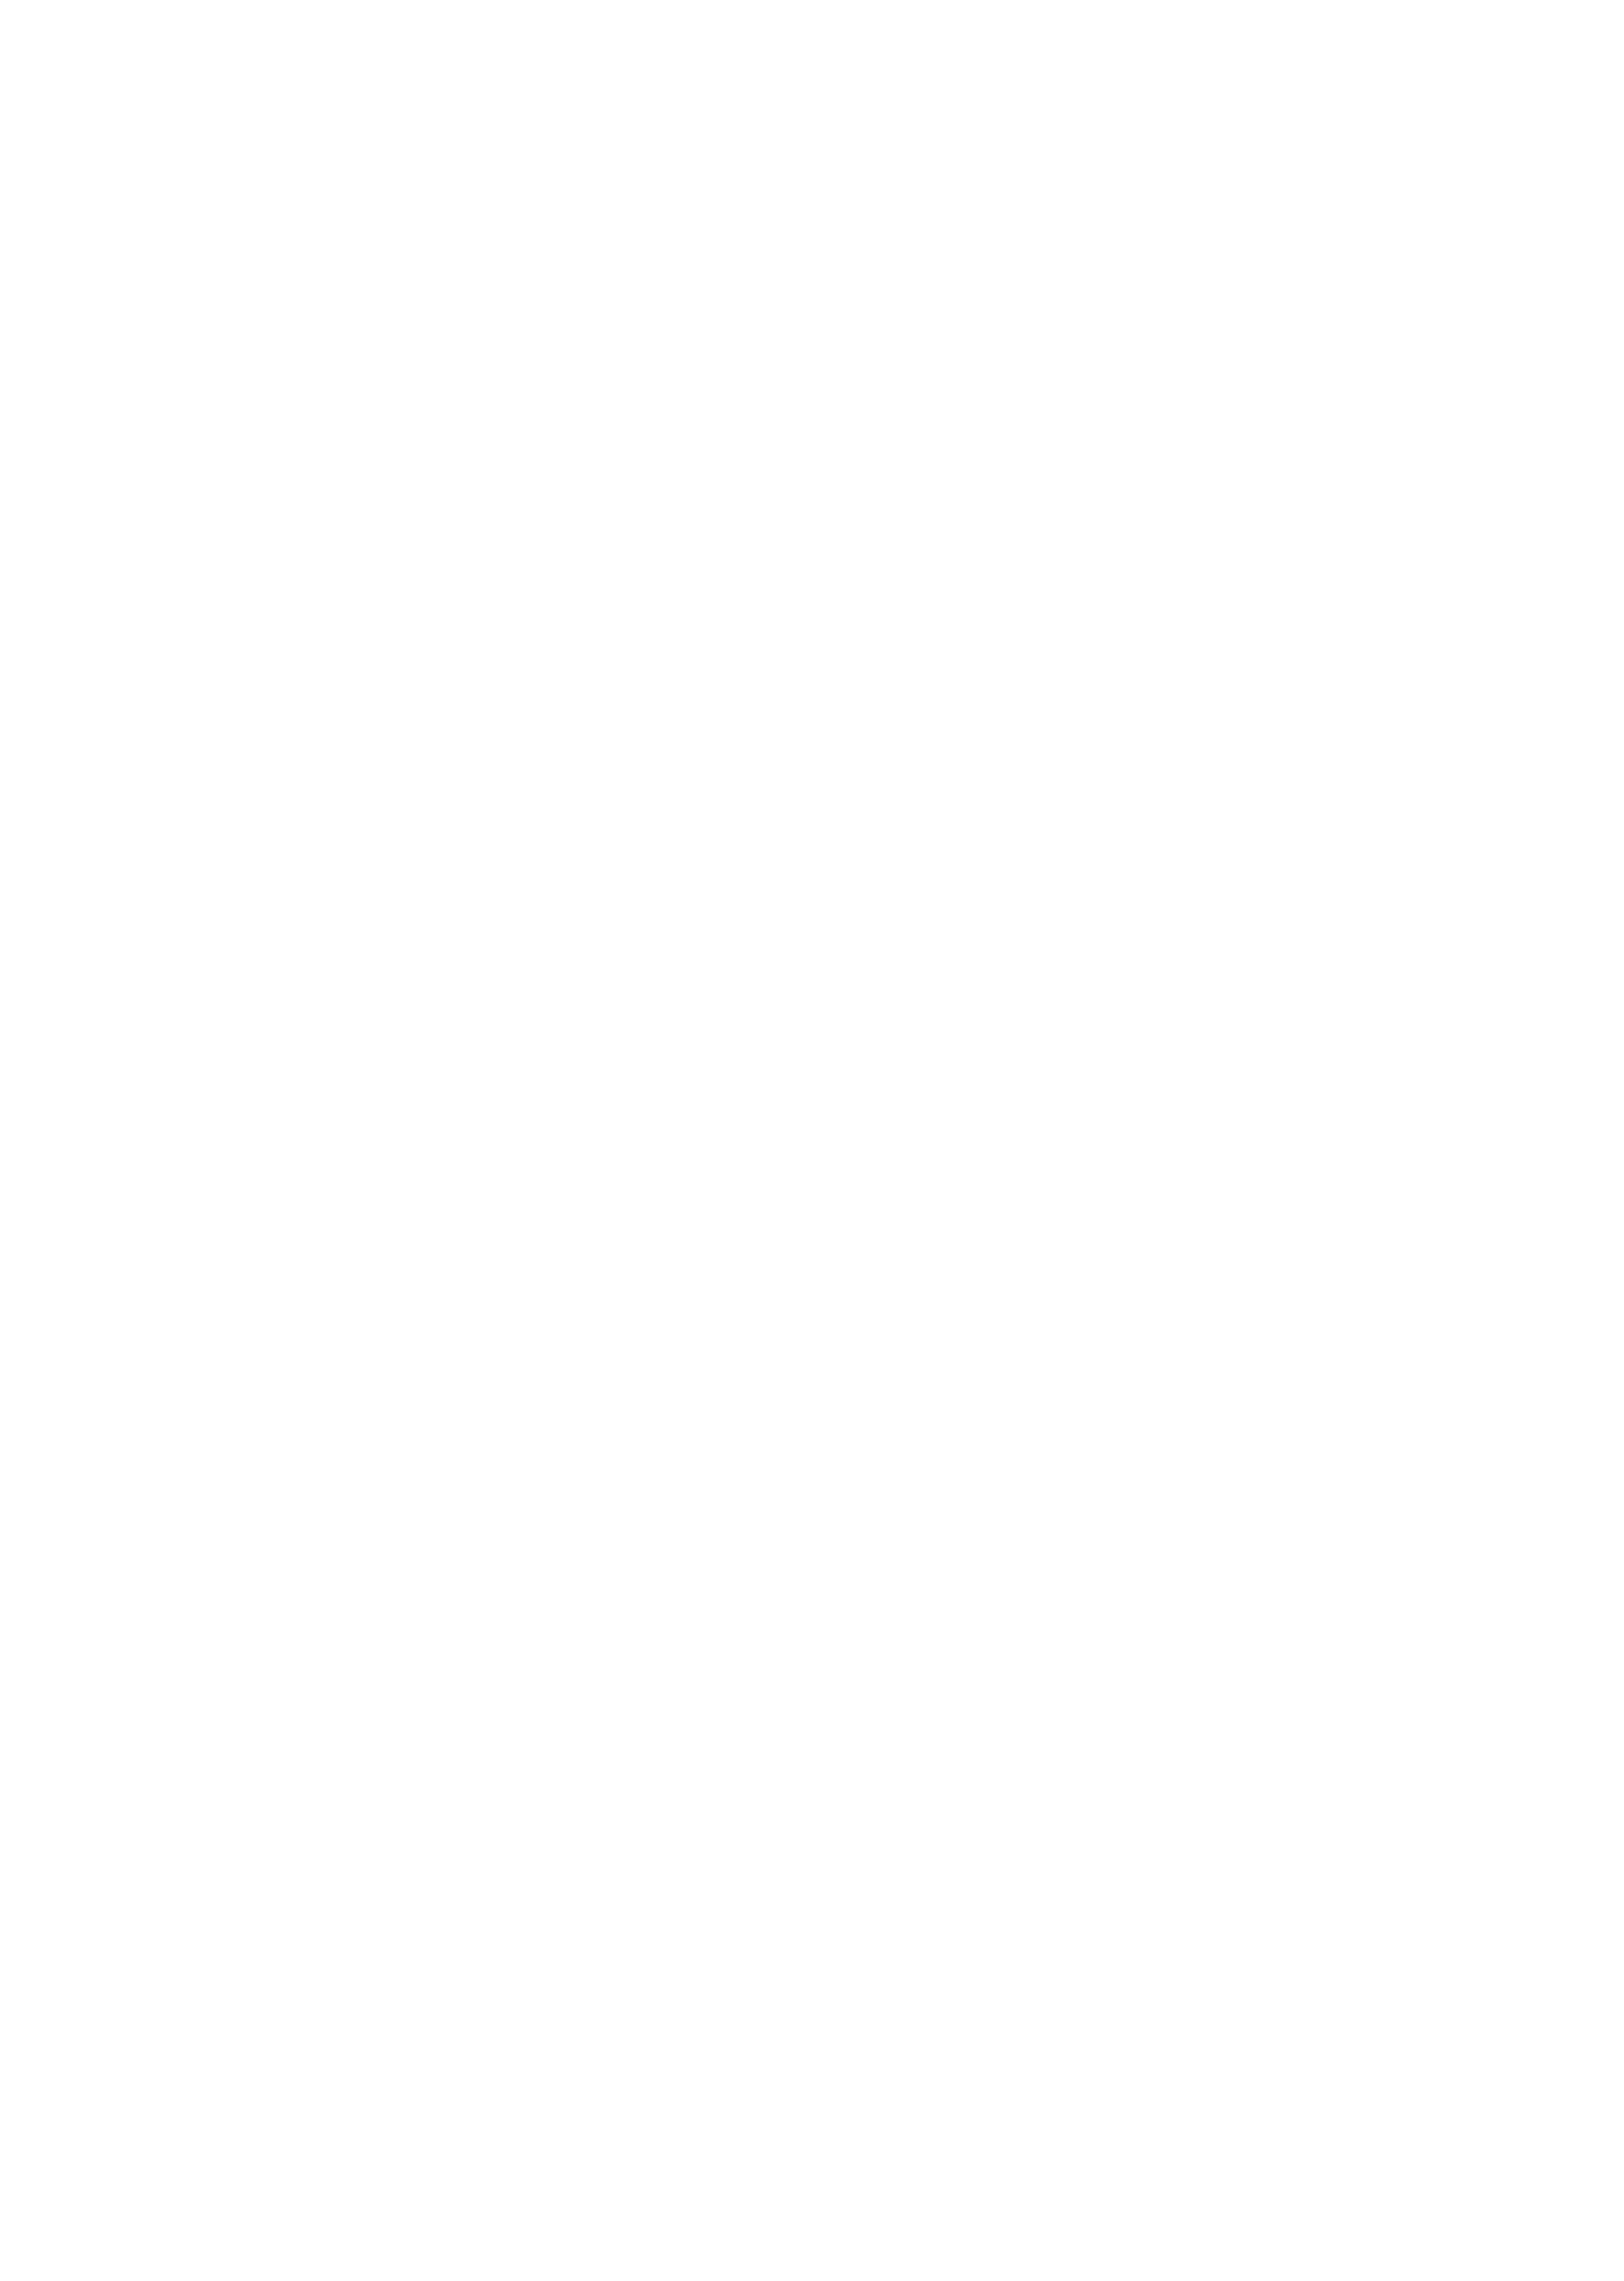 Cal State LA 75th Anniversary logo